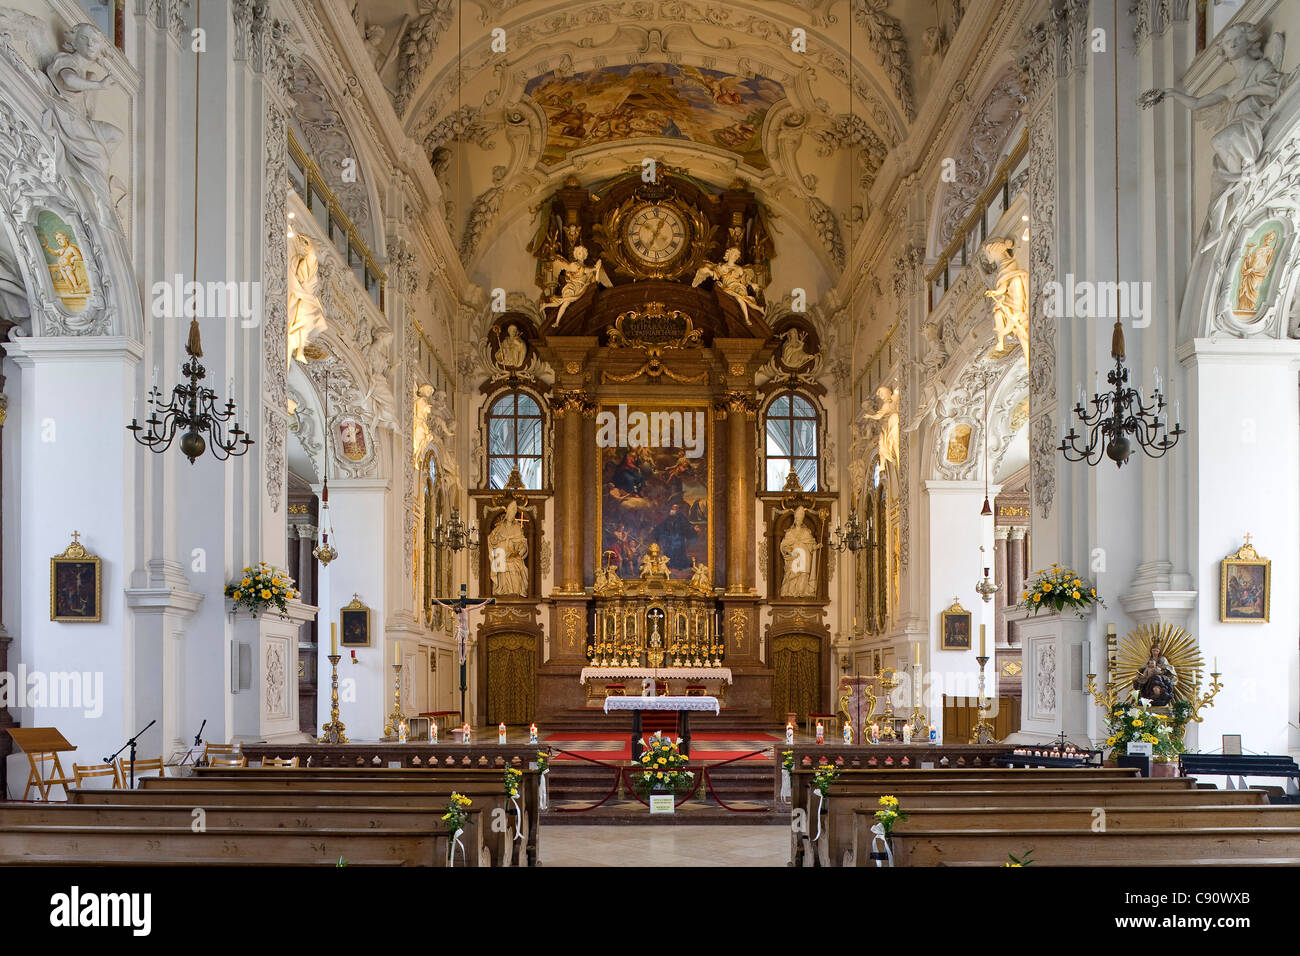 Innenansicht der Abtei Kirche Benediktbeuern Kloster, ehemalige Benediktinerabtei Benediktbeuern, Bayern, Deutschland, Europa Stockfoto